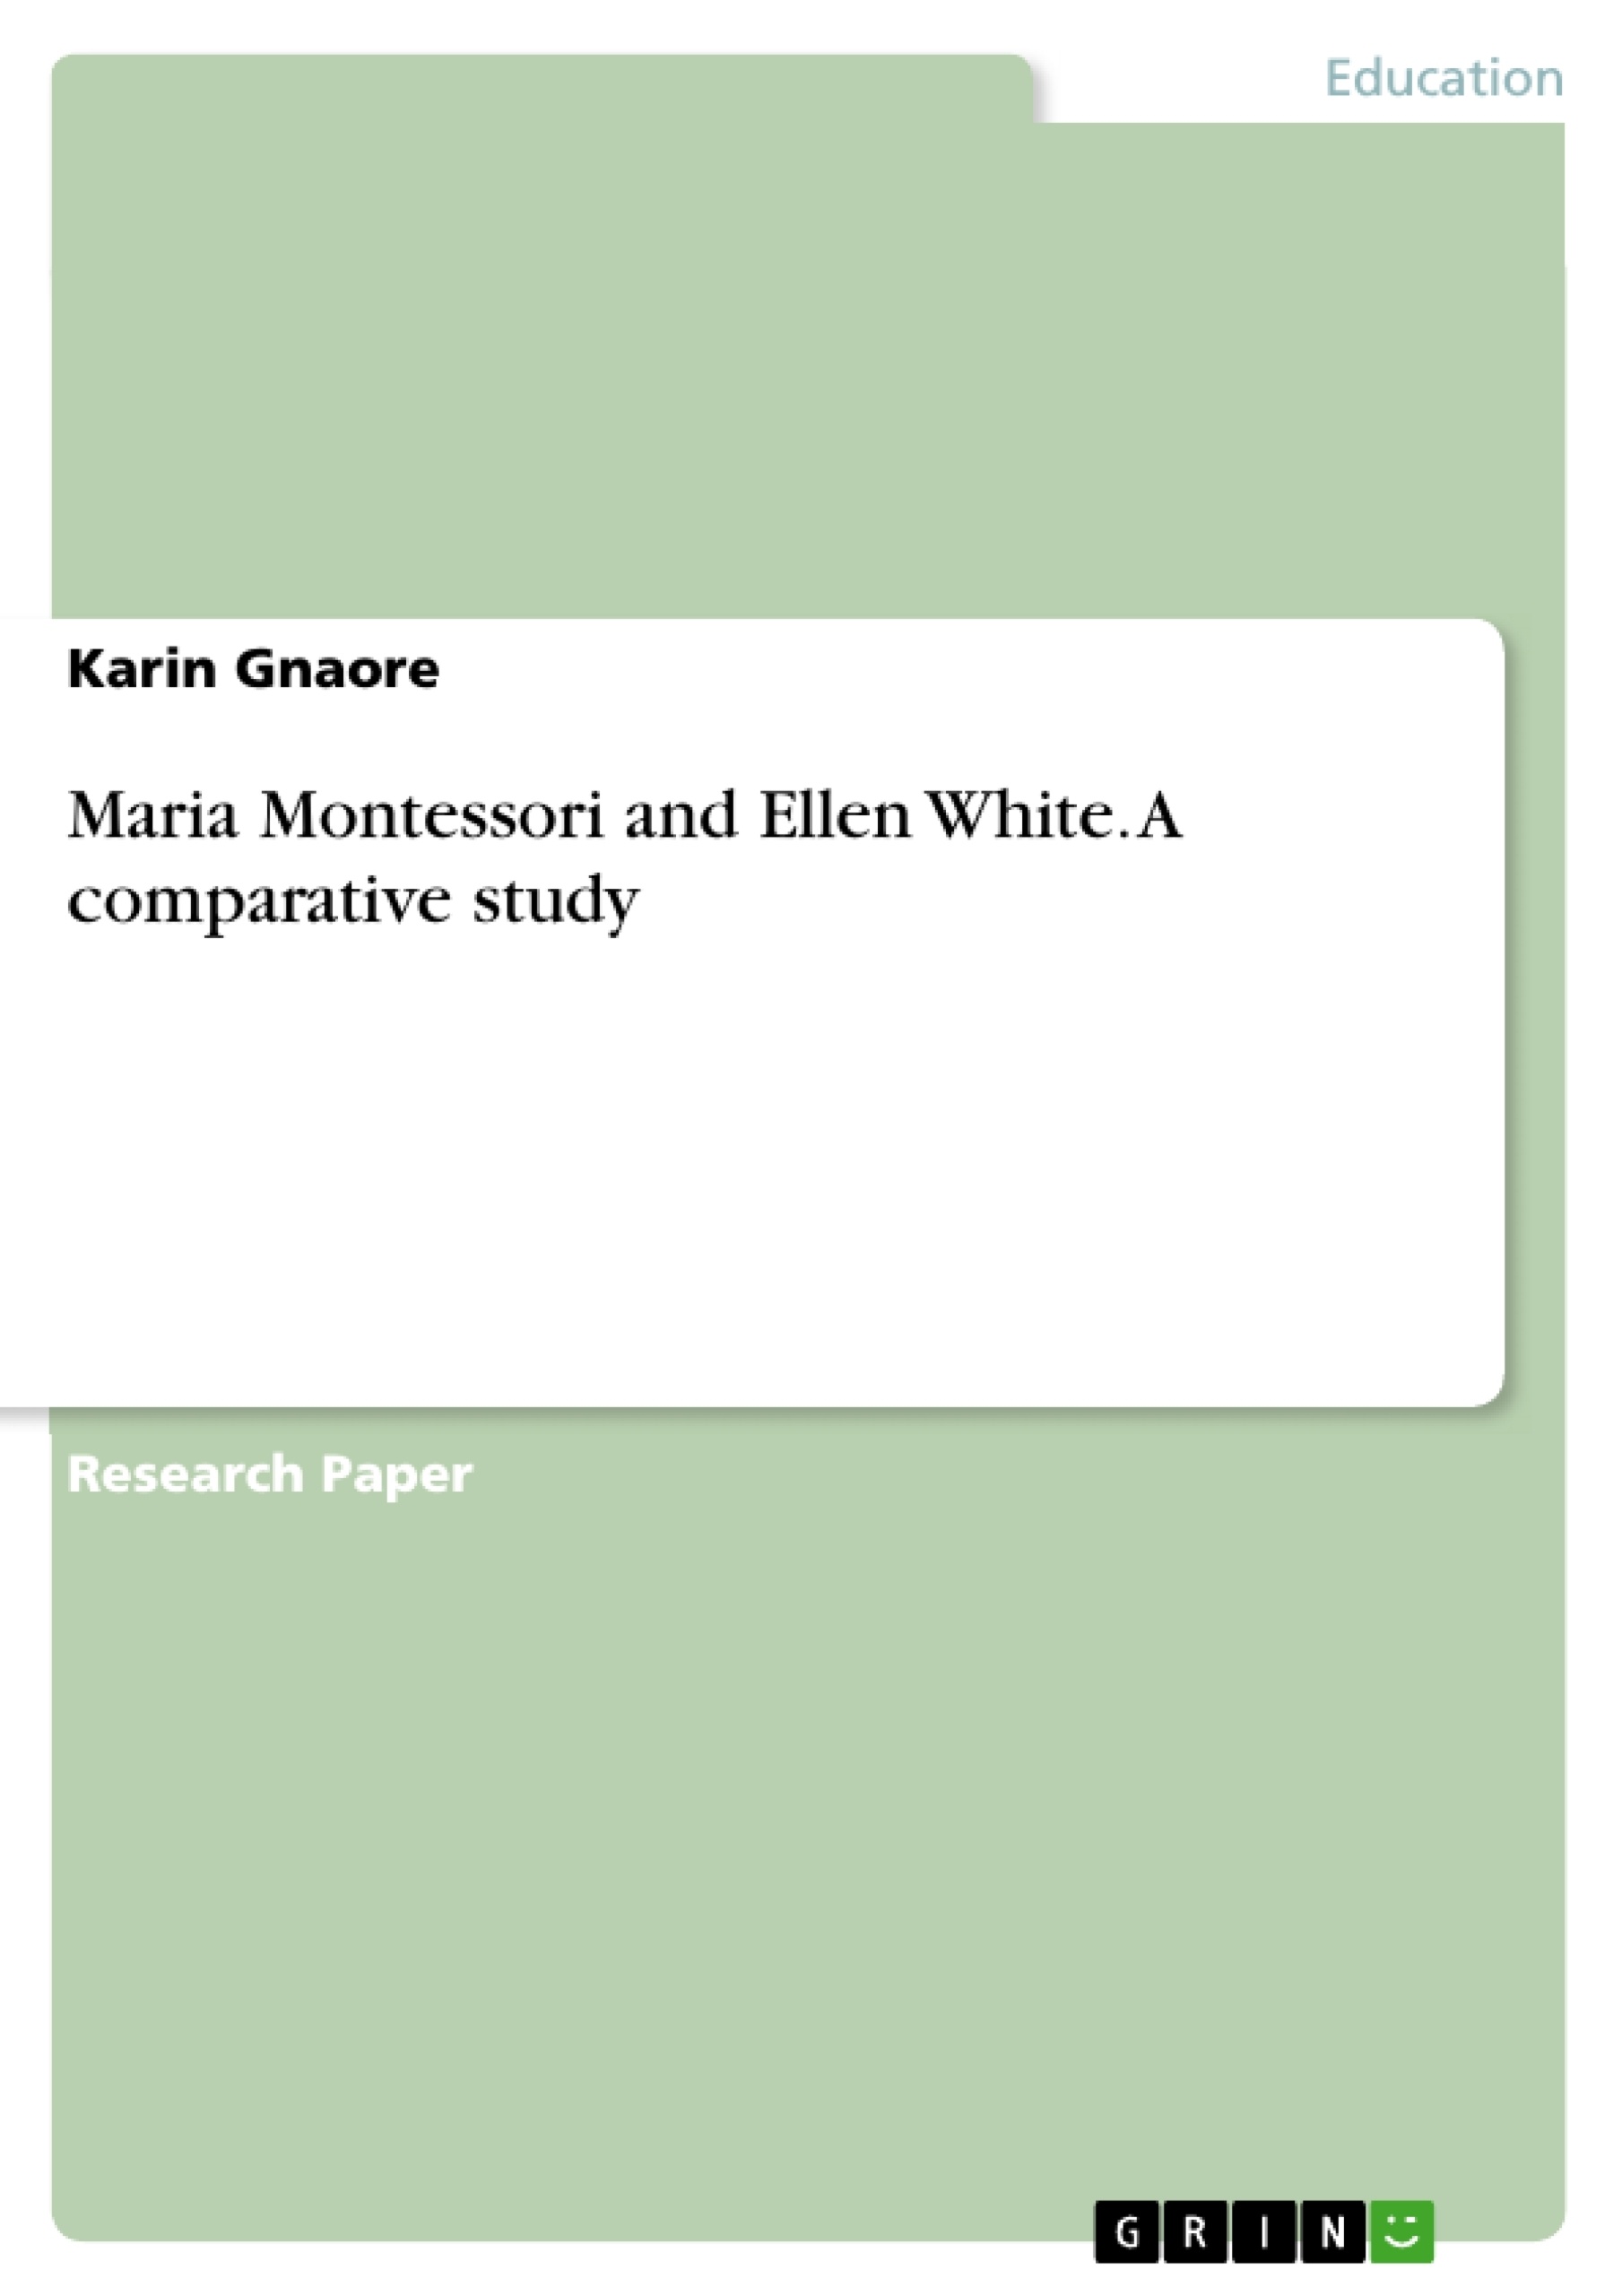 Title: Maria Montessori and Ellen White. A comparative study